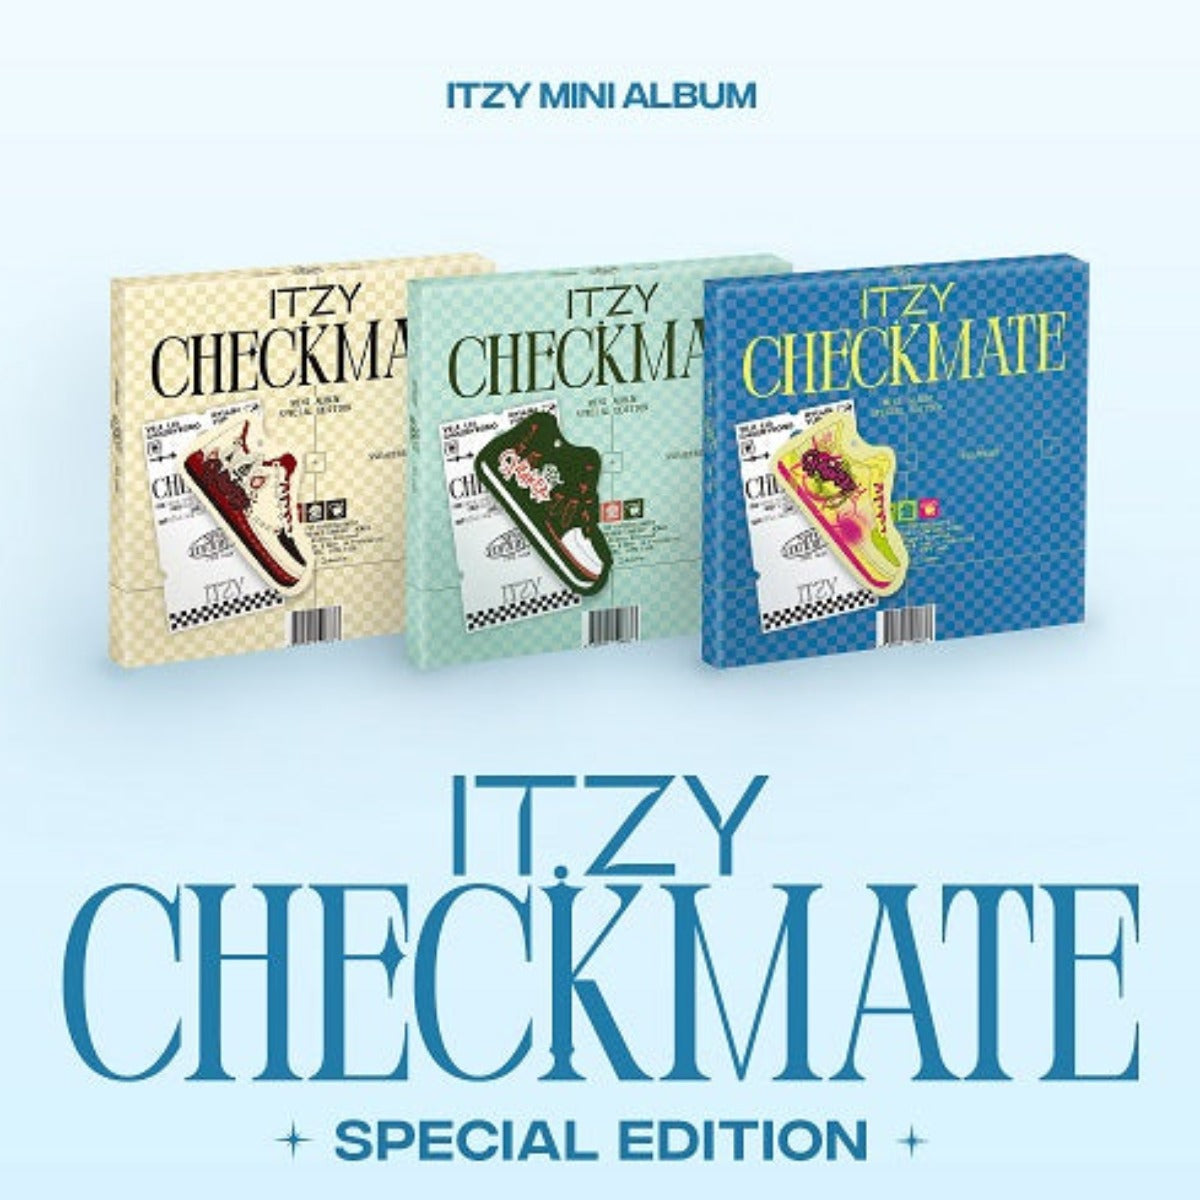 ITZY - Checkmate (Special Edition) (Random Version)